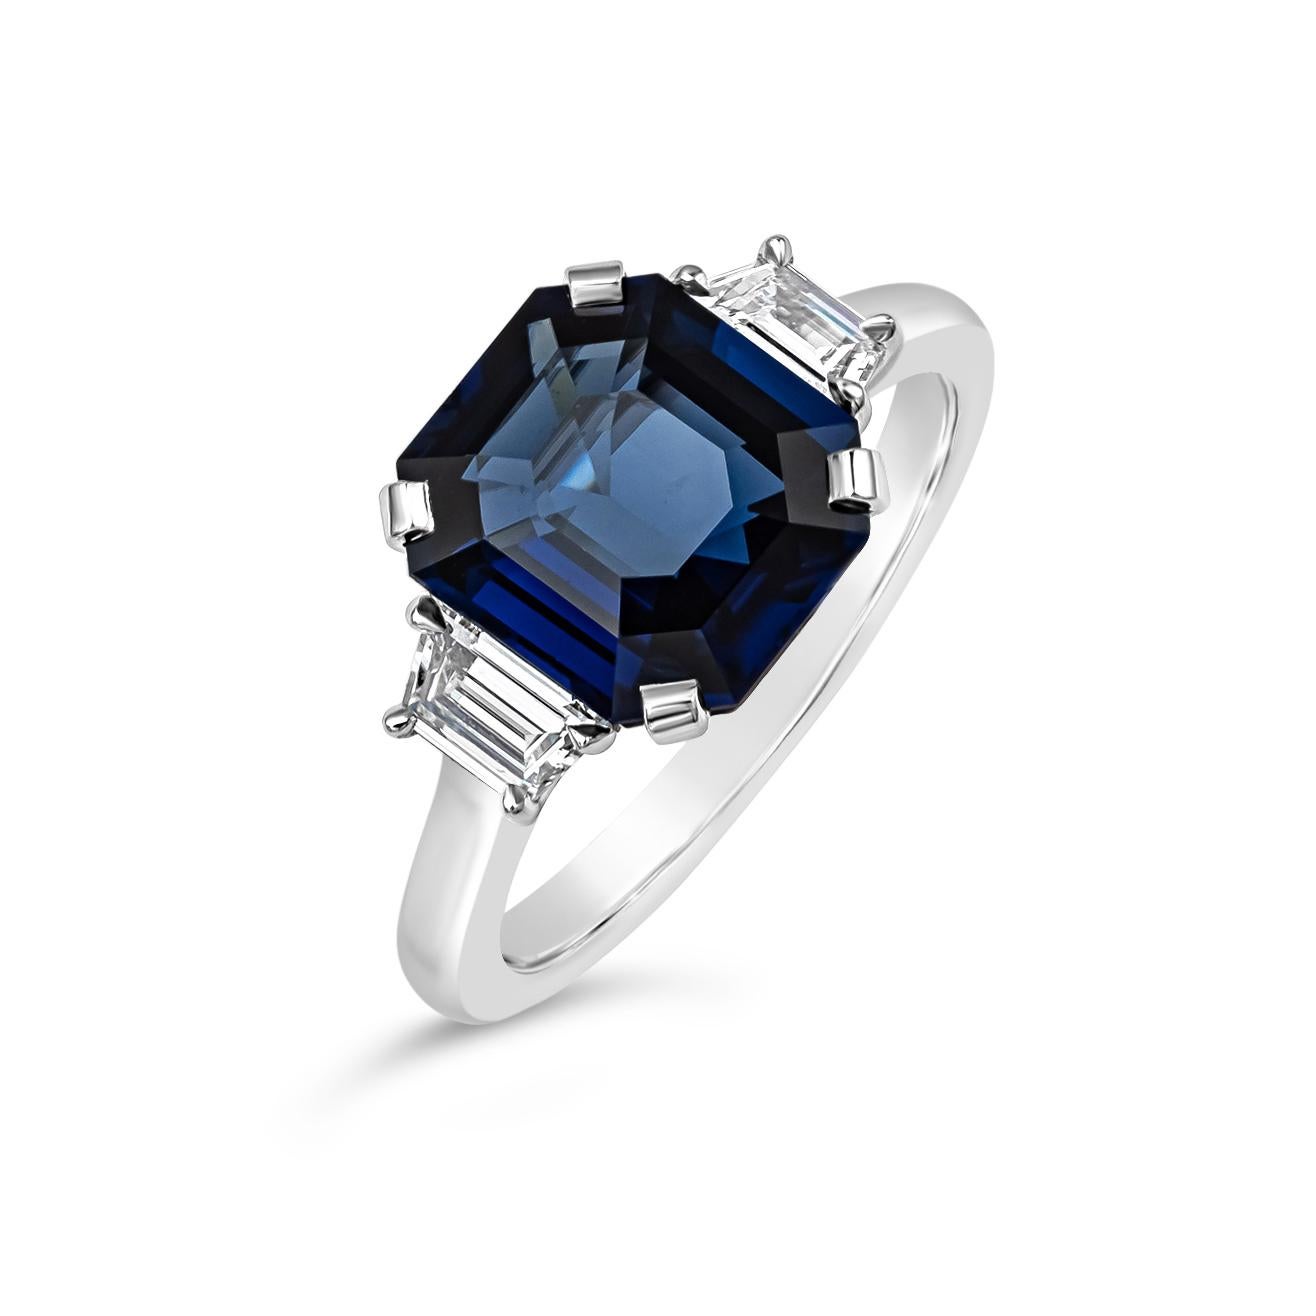 Ein klassischer und zeitloser Verlobungsring mit einem blauen Saphir im Smaragdschliff von 3,73 Karat, flankiert von zwei trapezförmigen Diamanten im Stufenschliff auf beiden Seiten. Die Diamanten wiegen insgesamt 0.40 Karat und sind ungefähr von